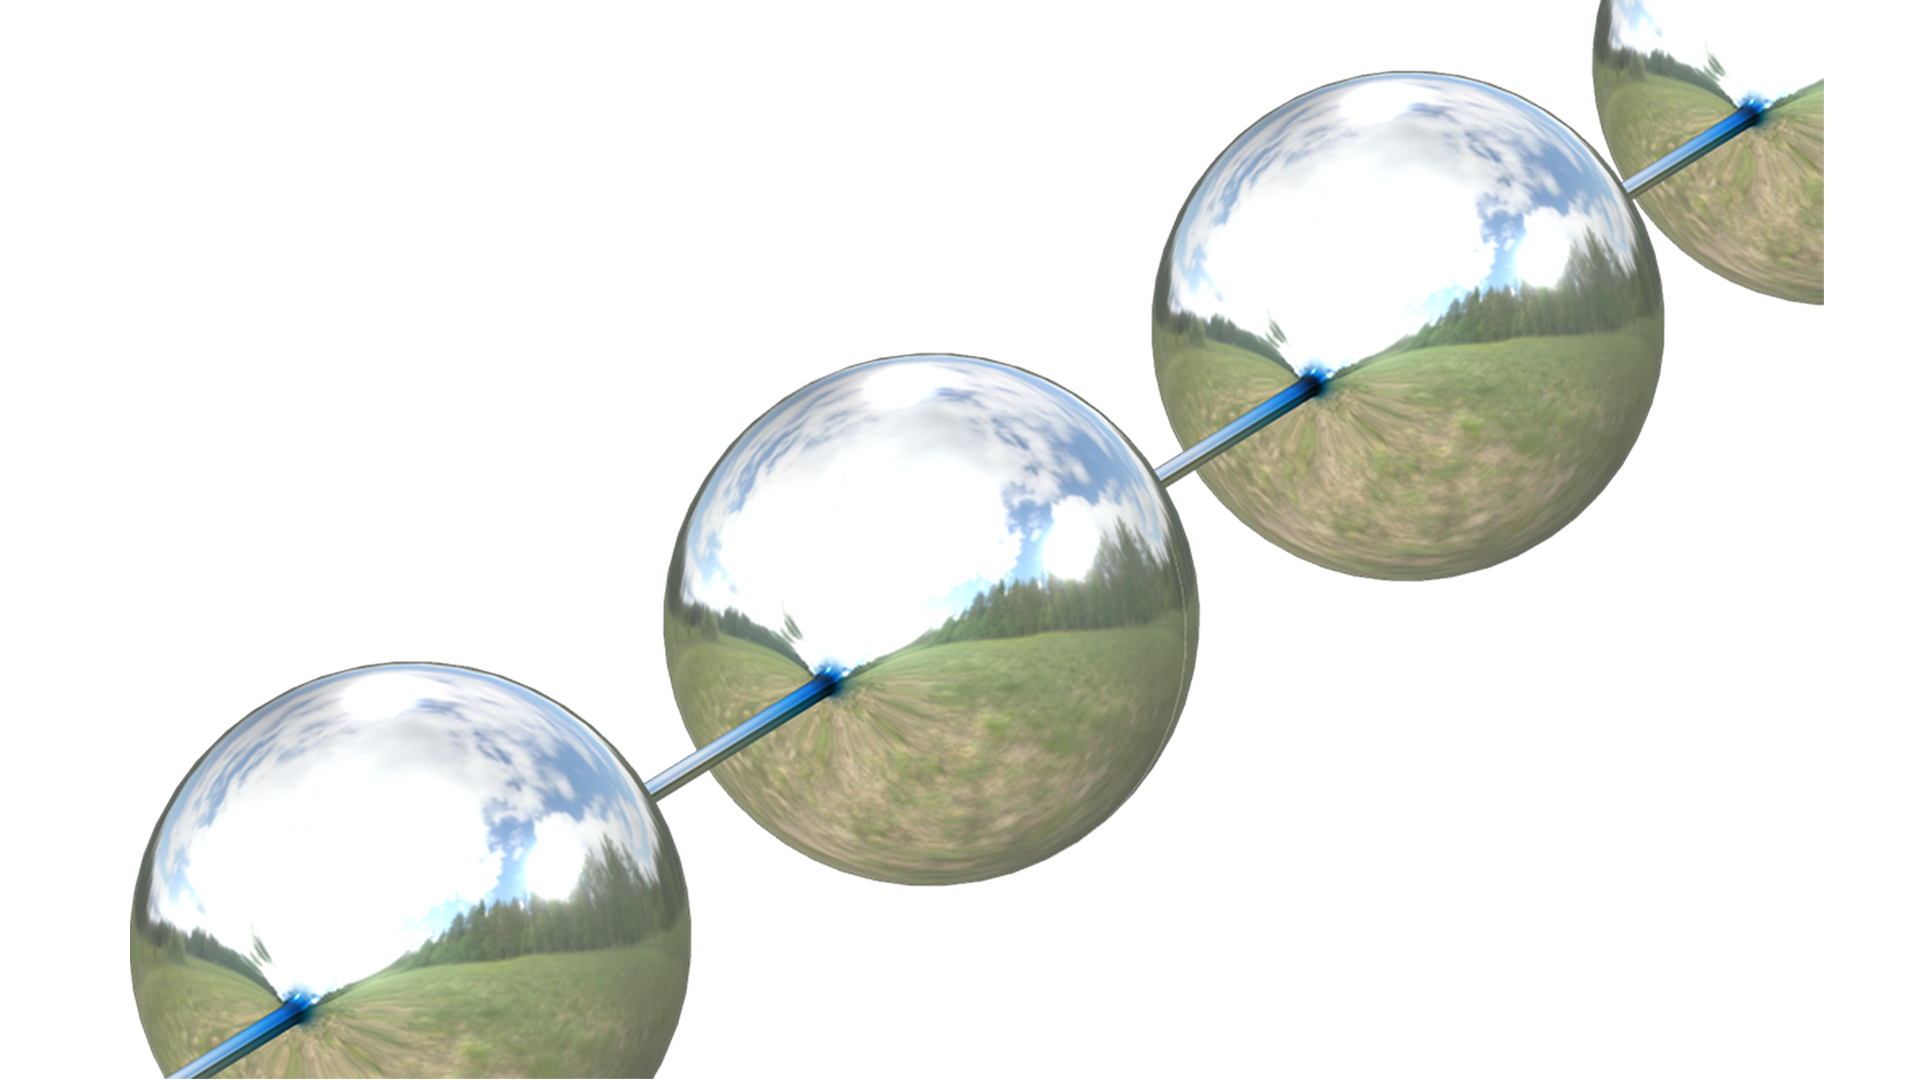 串珠模型的裁剪视图，其中显示两个完整串珠和两个部分串珠，它们都带有金属光泽，并通过反射显示天空、树木和田野。